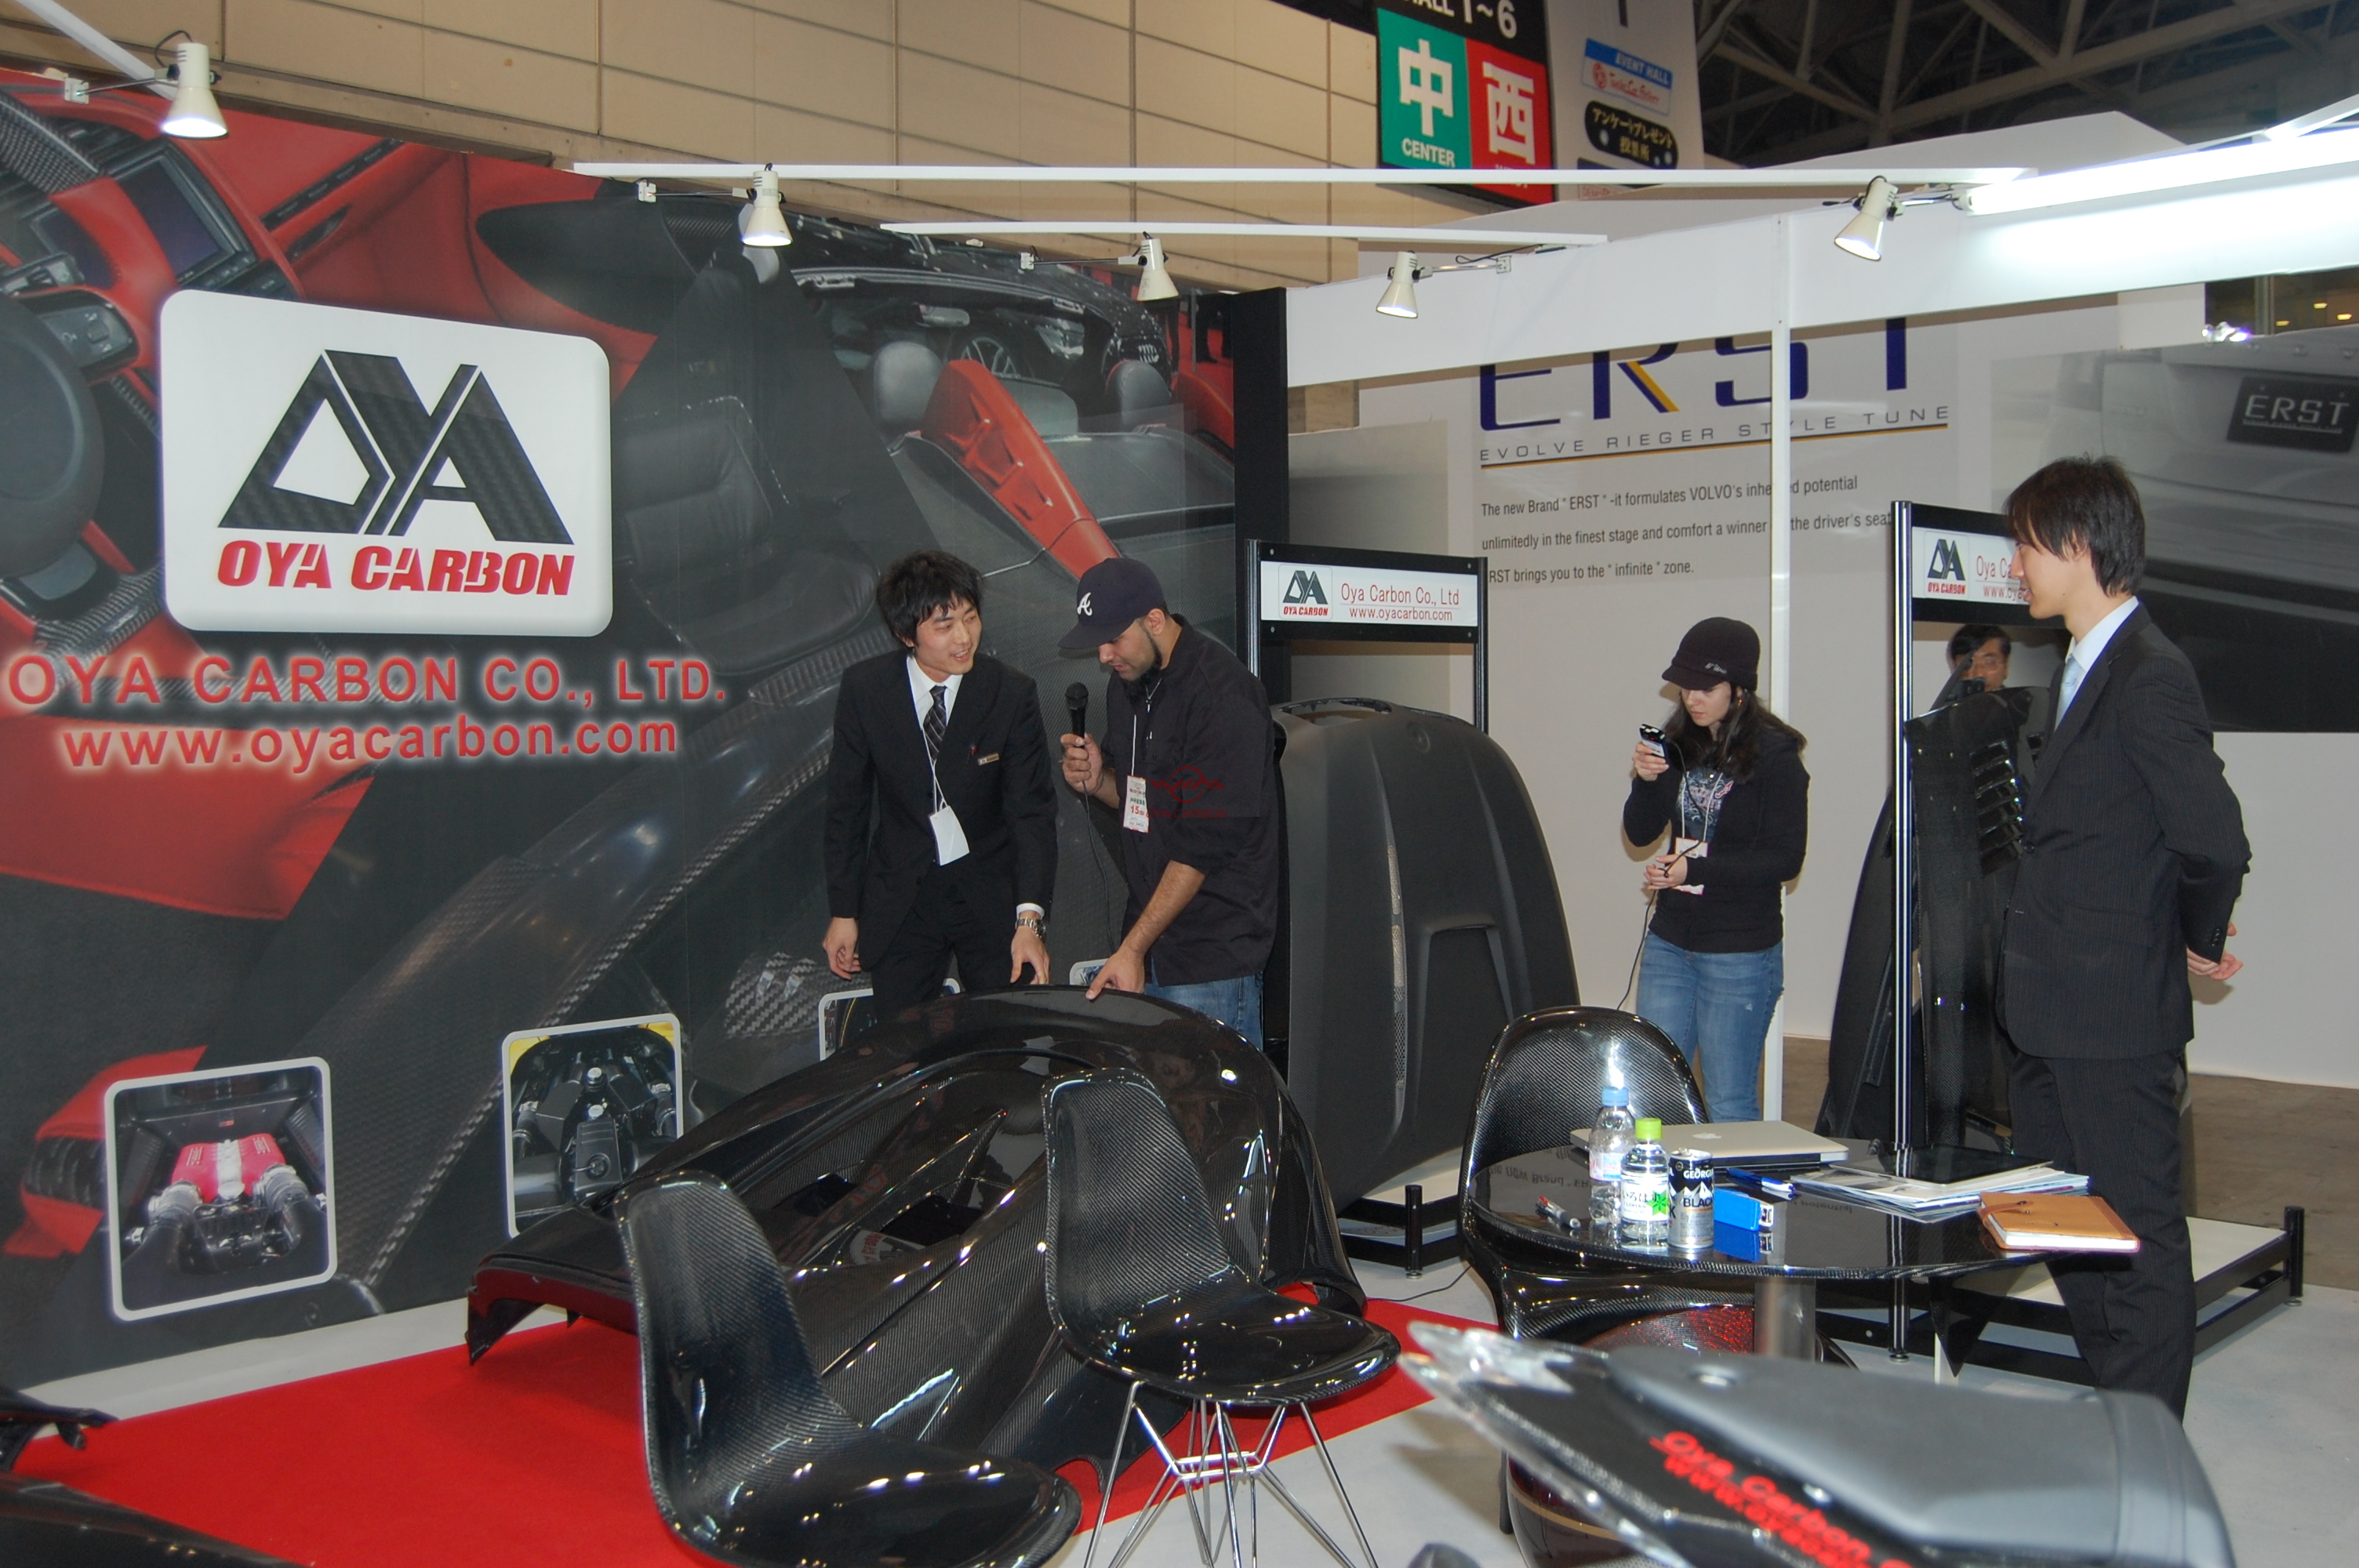 日本东京改装车展Tokyo Auto Salon 2012.1.13-1.15 19